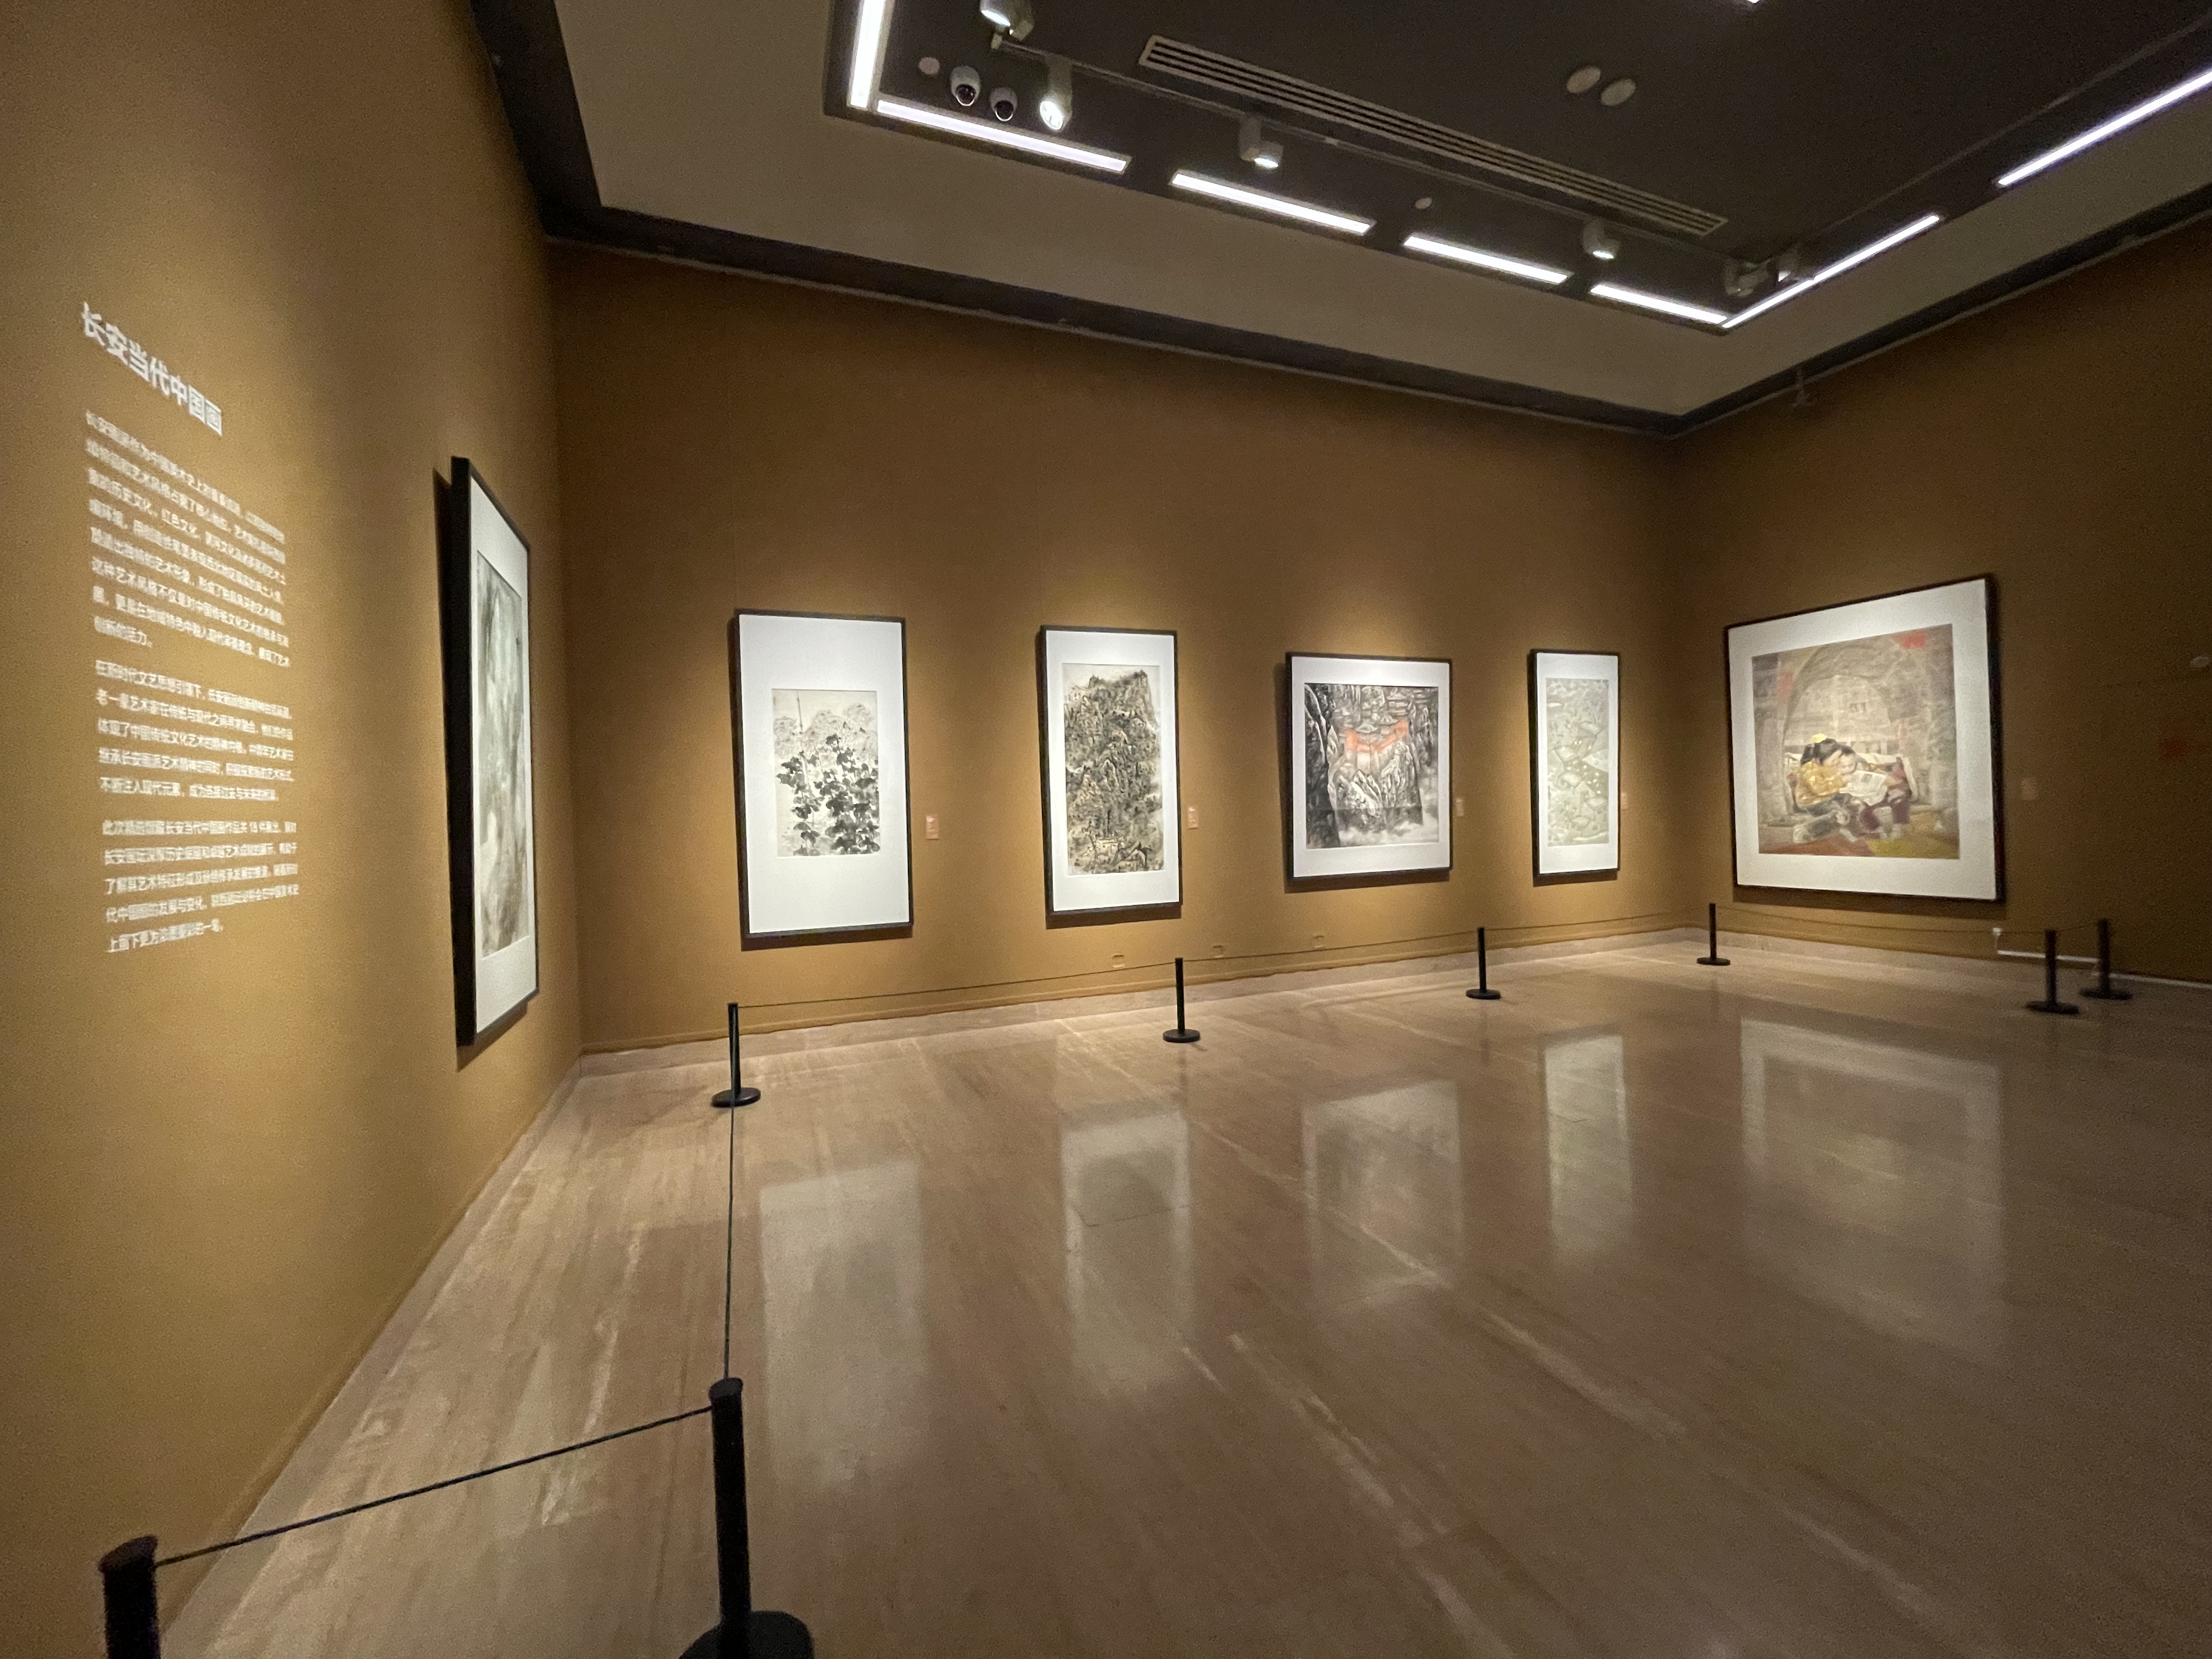 雅昌现场图集美在荟萃一场展览看遍全国十五家美术馆珍藏